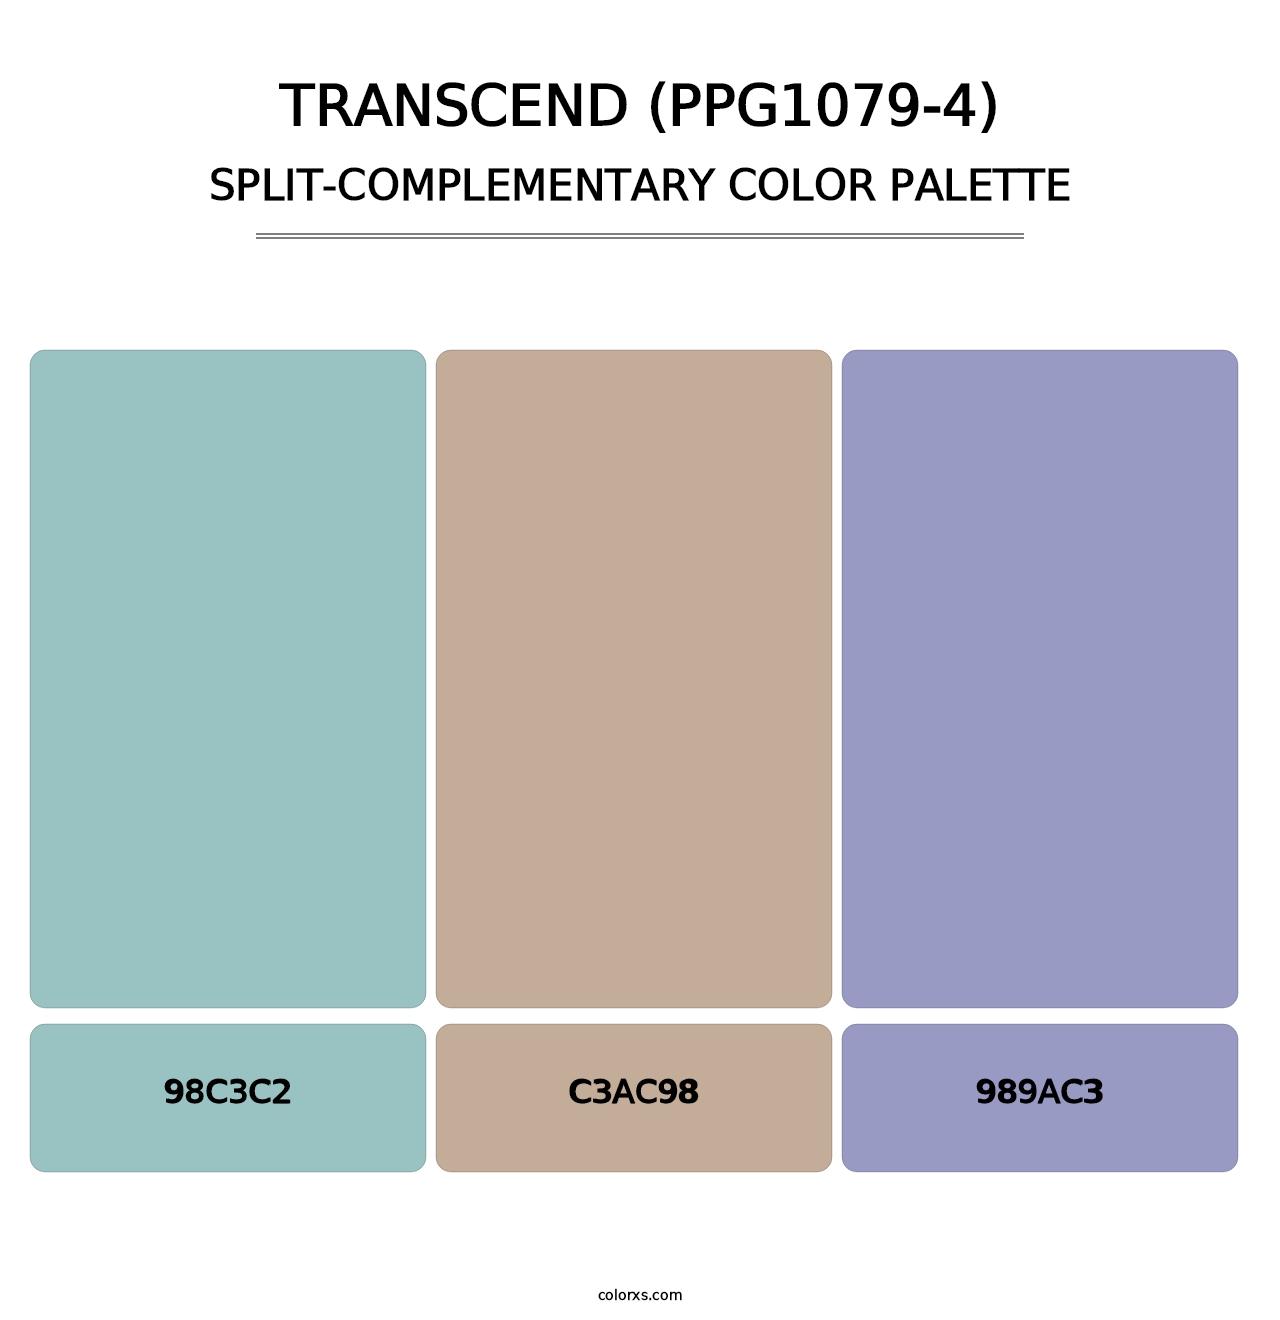 Transcend (PPG1079-4) - Split-Complementary Color Palette